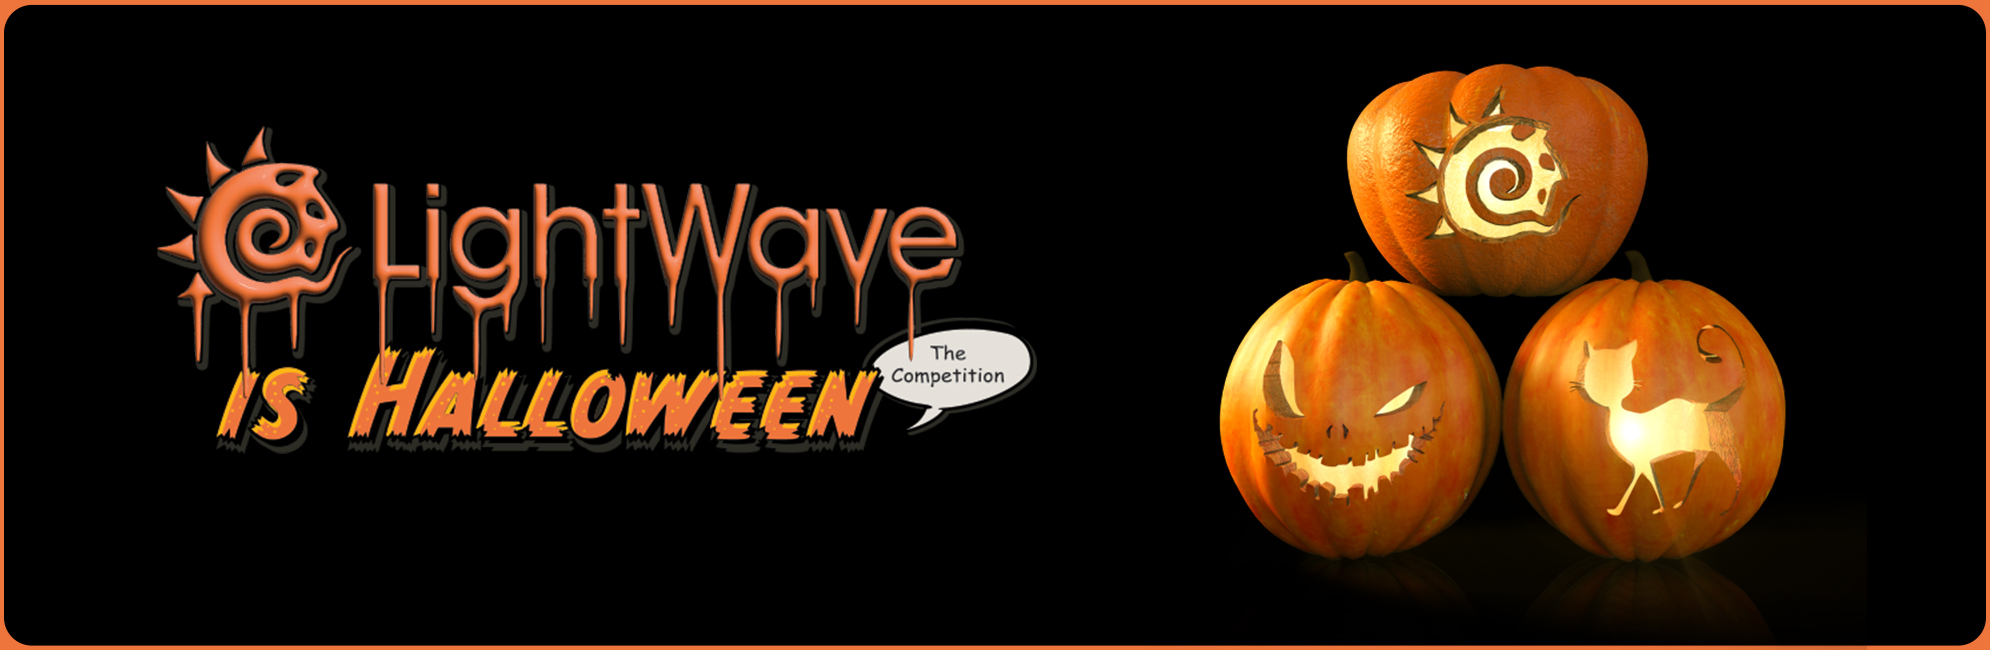 Nome: LightWave is Halloween  LightWave 3D Promo 20320918.jpg
Visite: 60
Dimensione: 387.4 KB